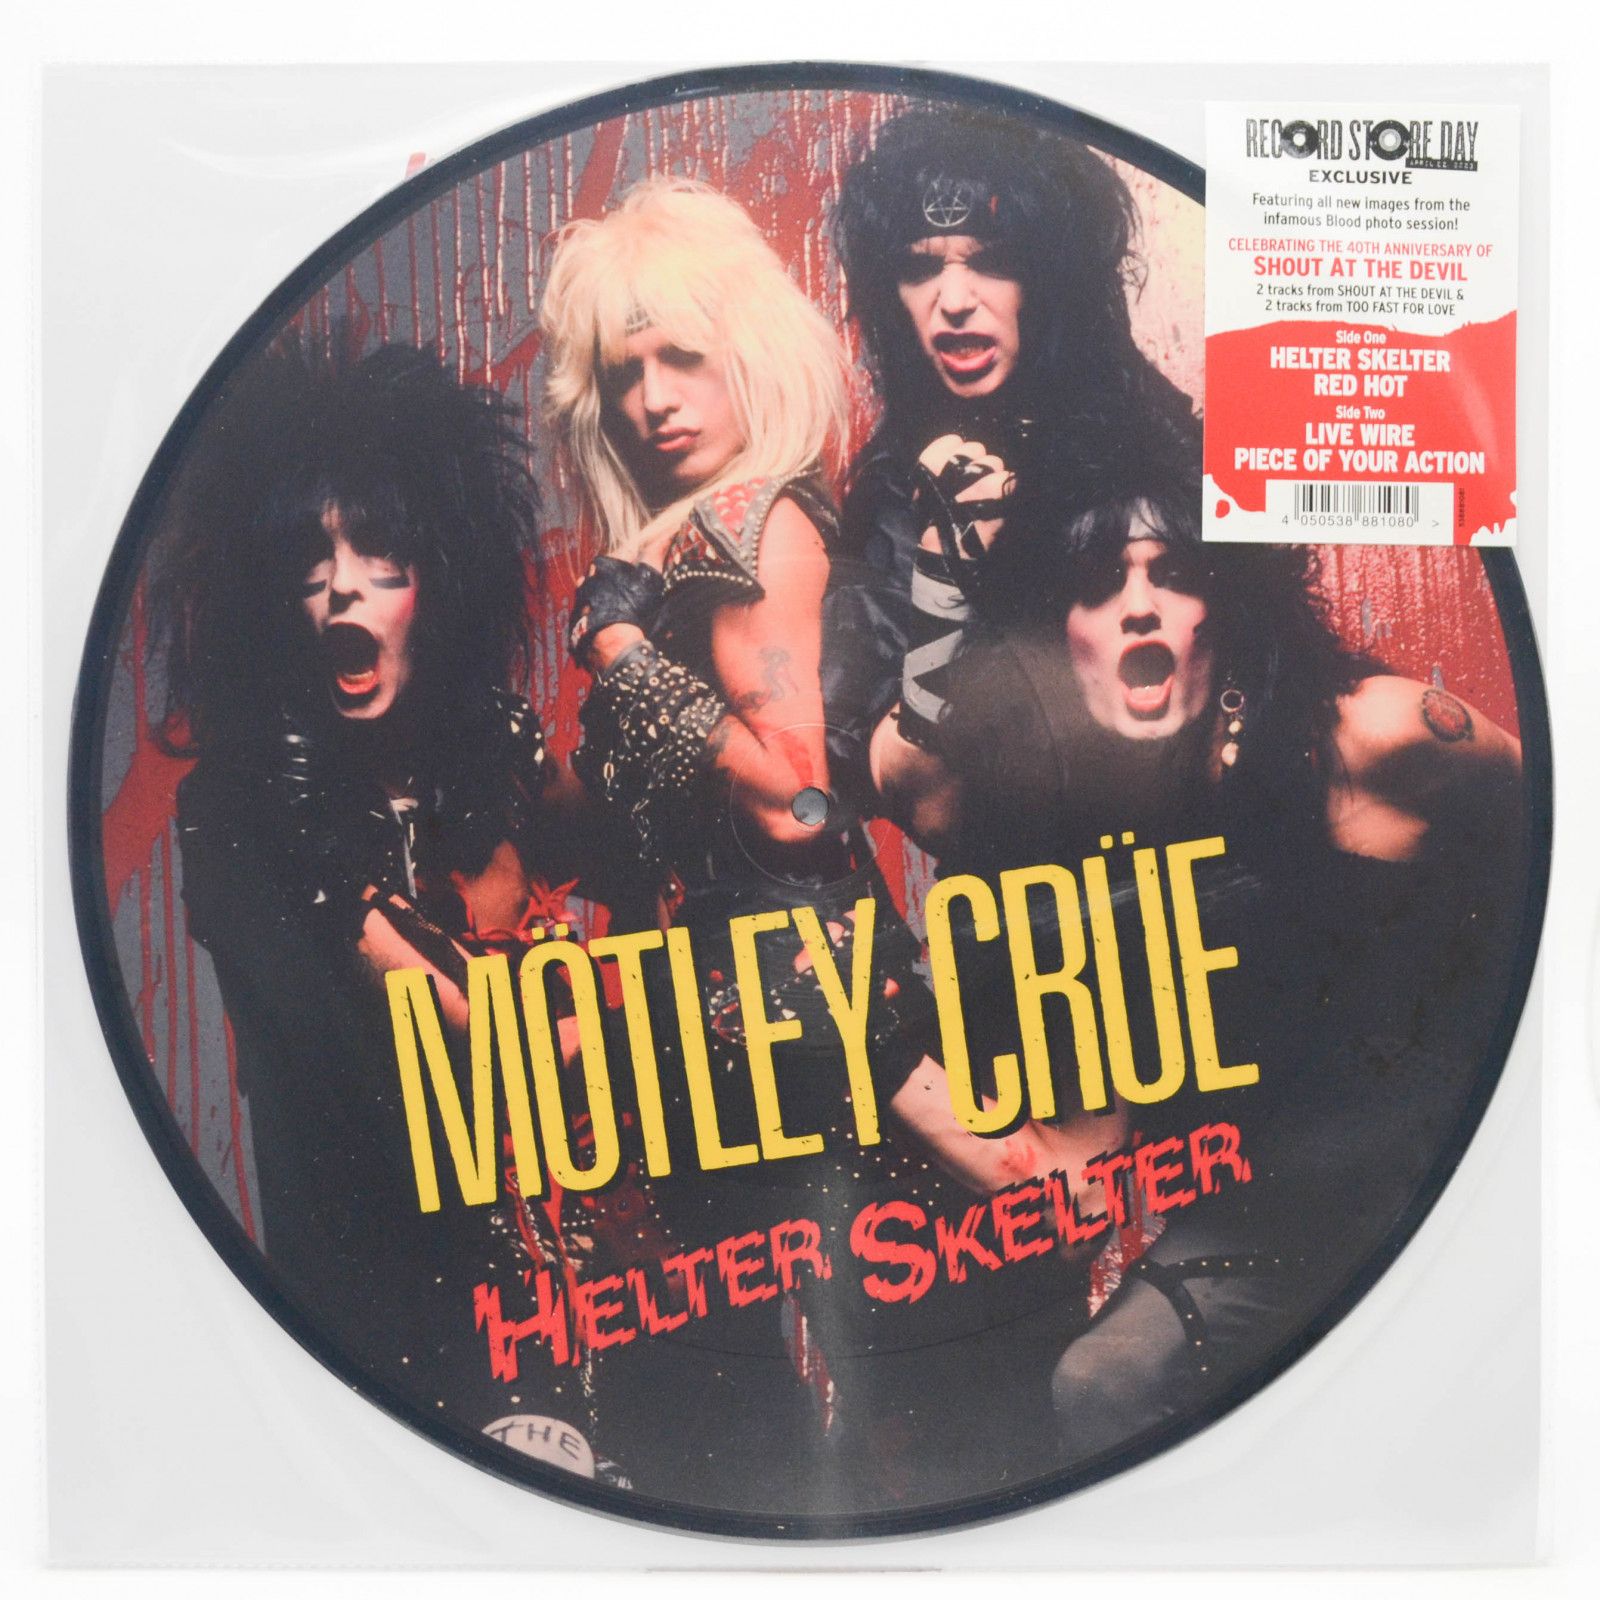 Mötley Crüe — Helter Skelter, 1983